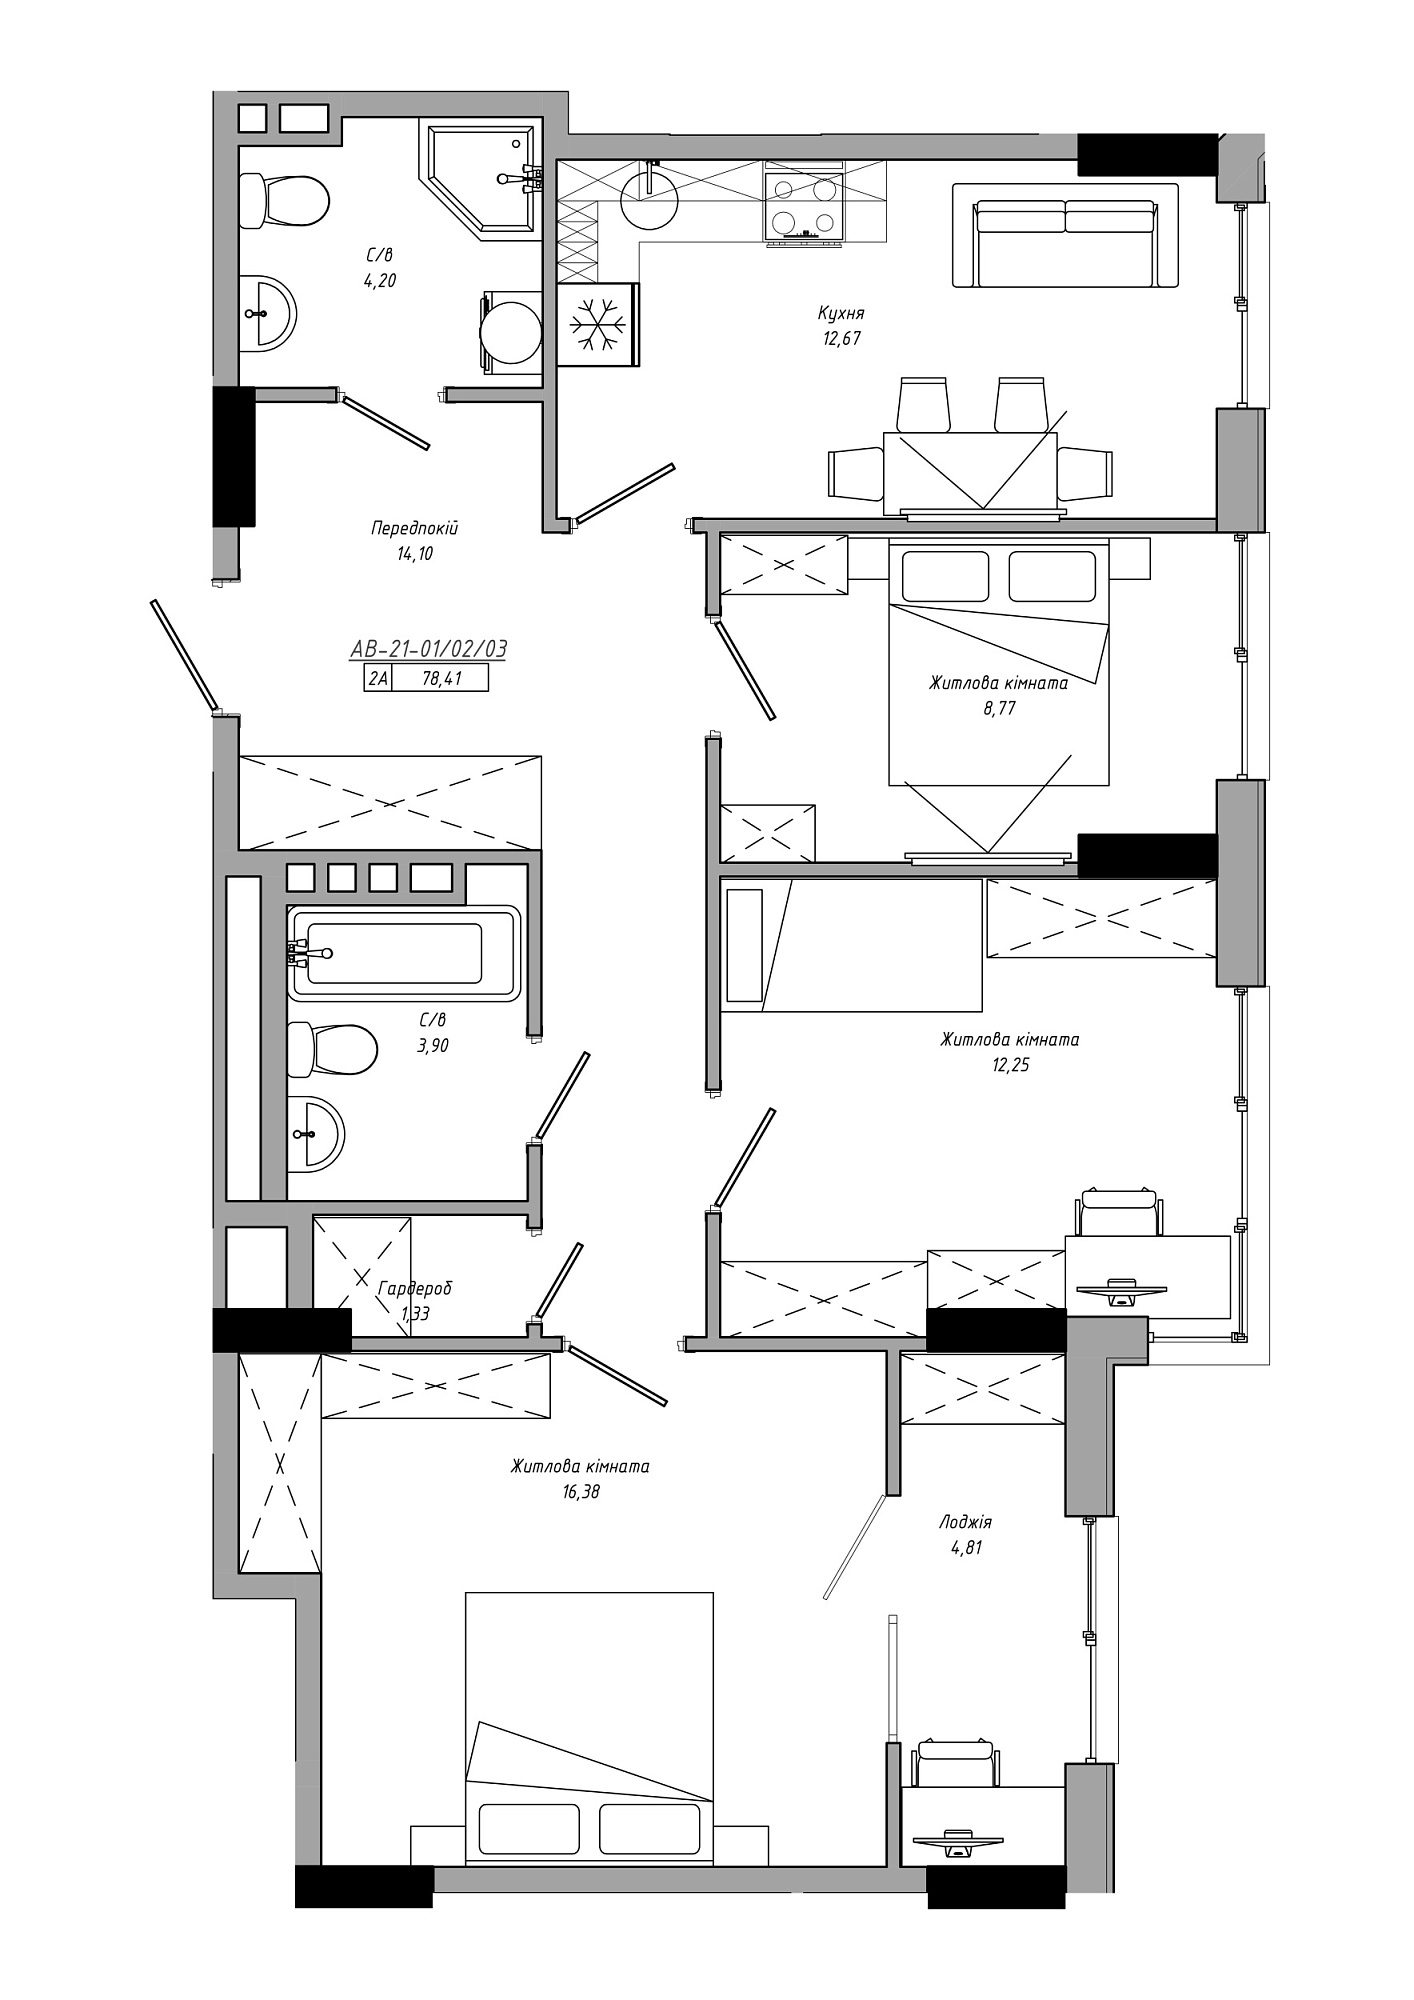 Планування 3-к квартира площею 78.41м2, AB-21-01/00002.